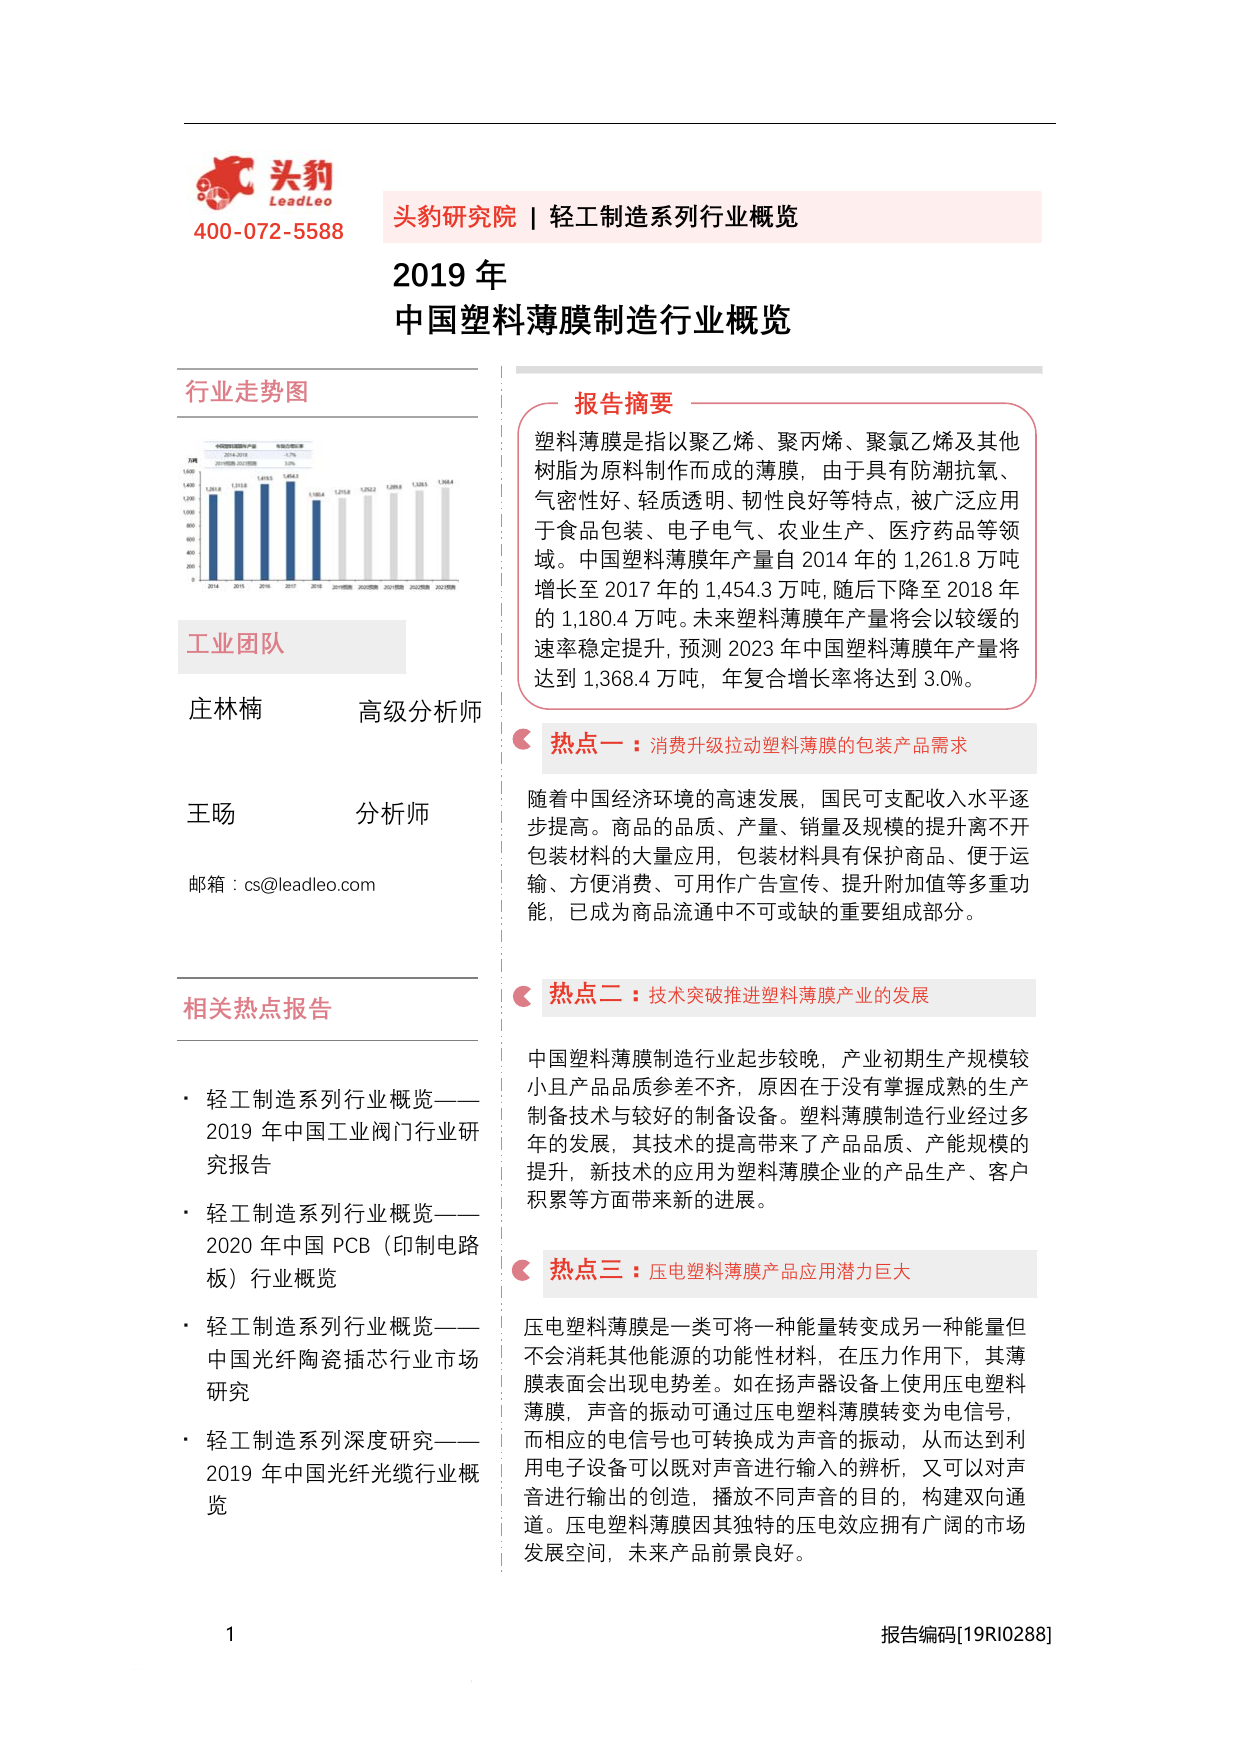 -头豹研究院中国塑料薄膜制造行业概览-2020-10-16